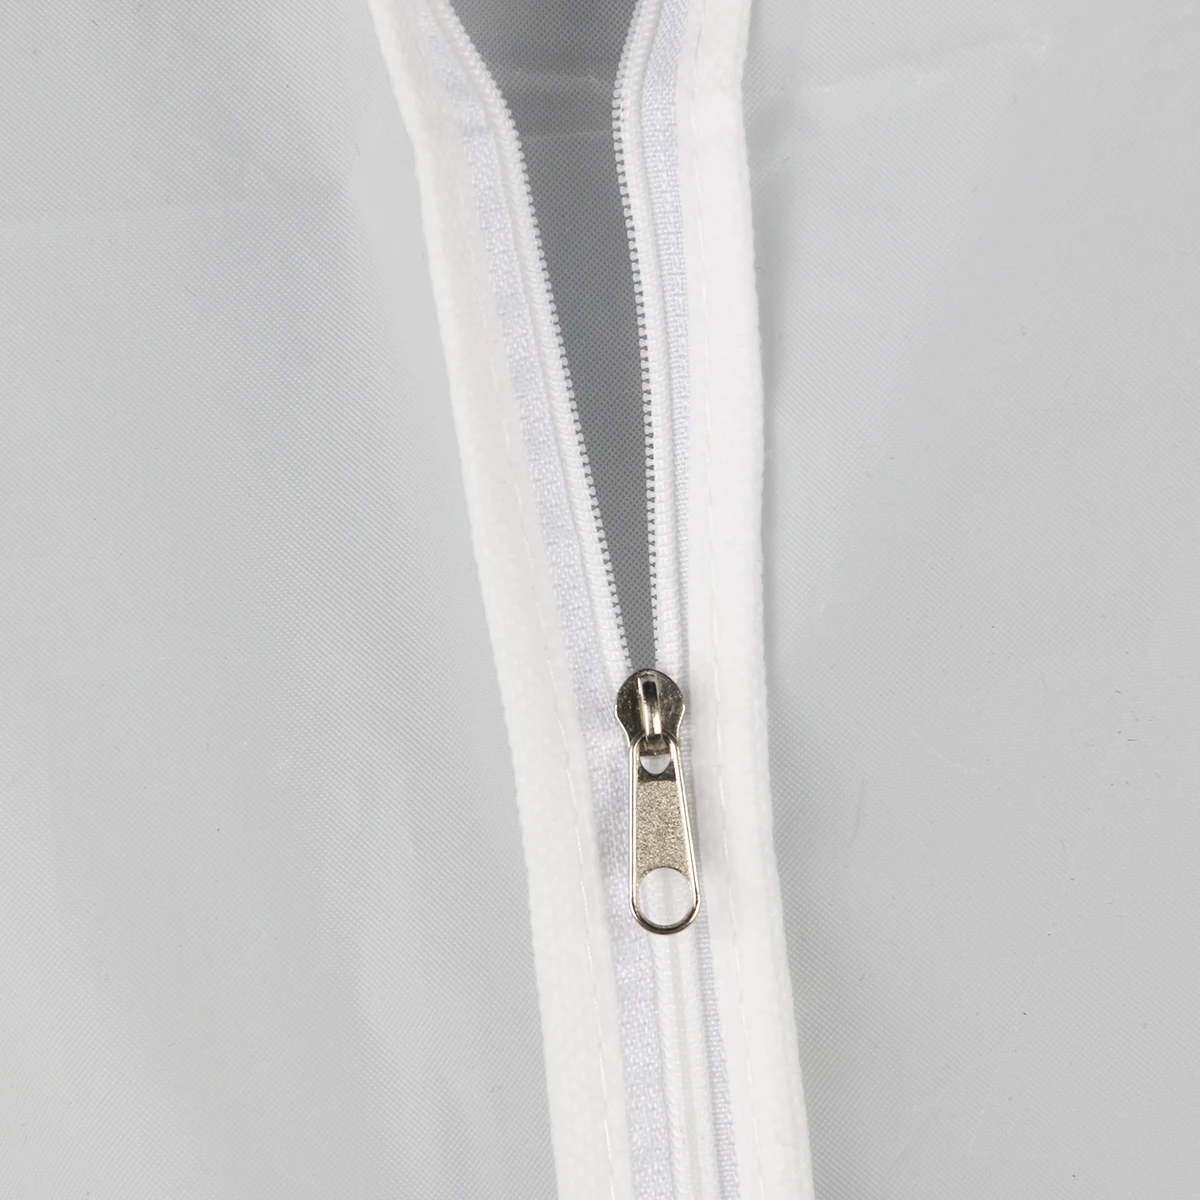 6 шт непромокаемый Чехлы для костюма одежды чехол для одежды защитный мешок для одежды одежда защита, костюм, покрытие сумки пылезащитный вешалка для хранения